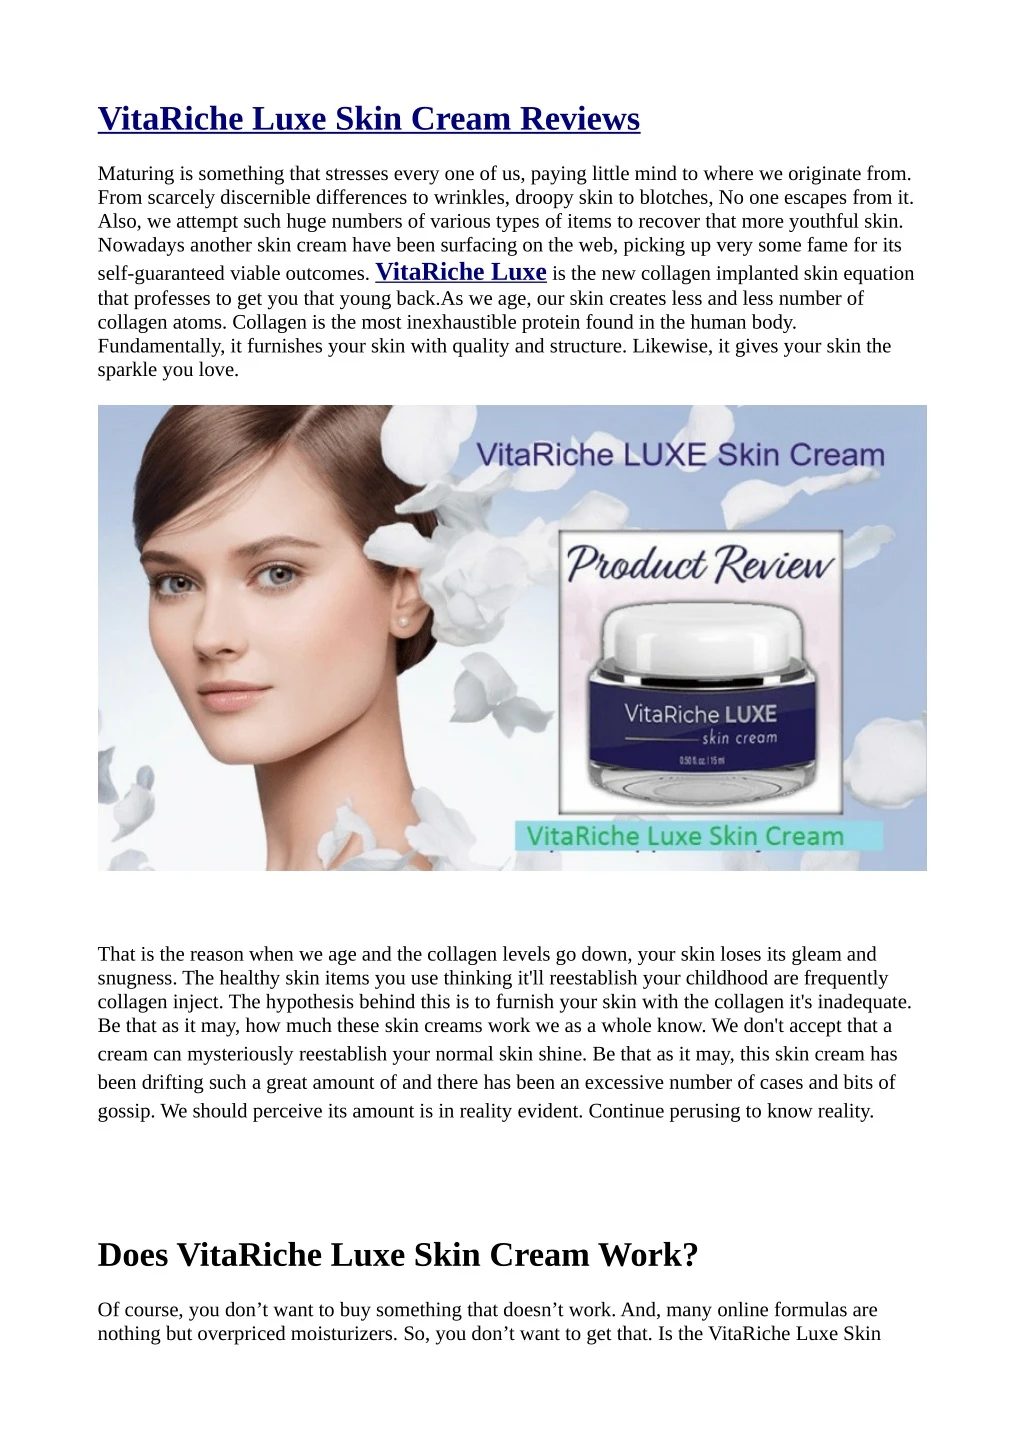 vitariche luxe skin cream reviews